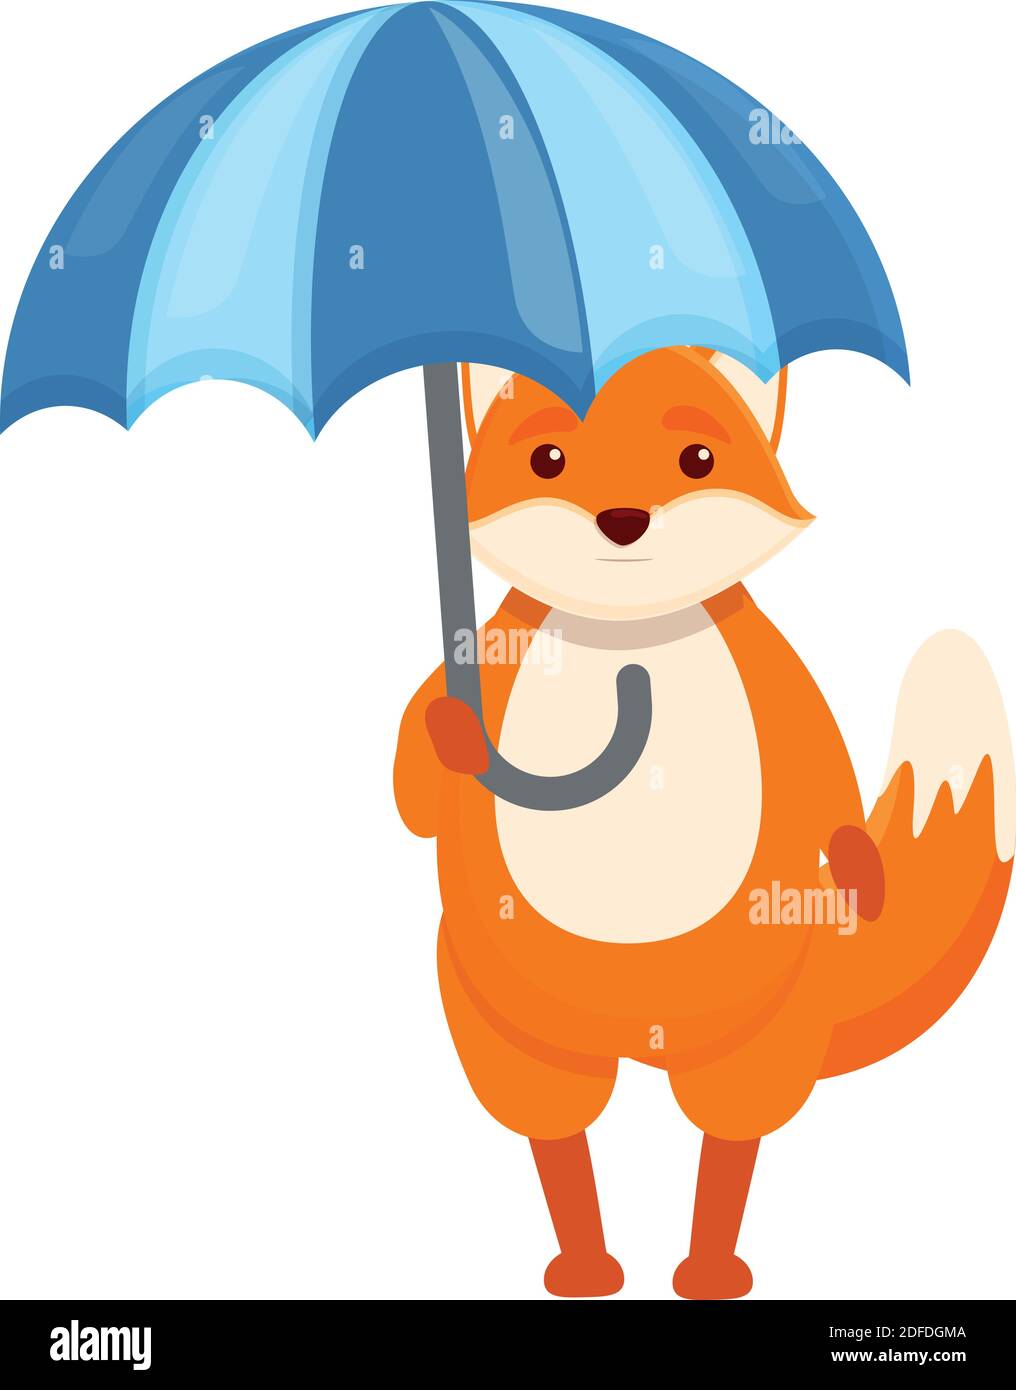 Symbol für Regenschirm von Fox. Cartoon von Fuchs regen Regenschirm  Vektor-Symbol für Web-Design isoliert auf weißem Hintergrund  Stock-Vektorgrafik - Alamy